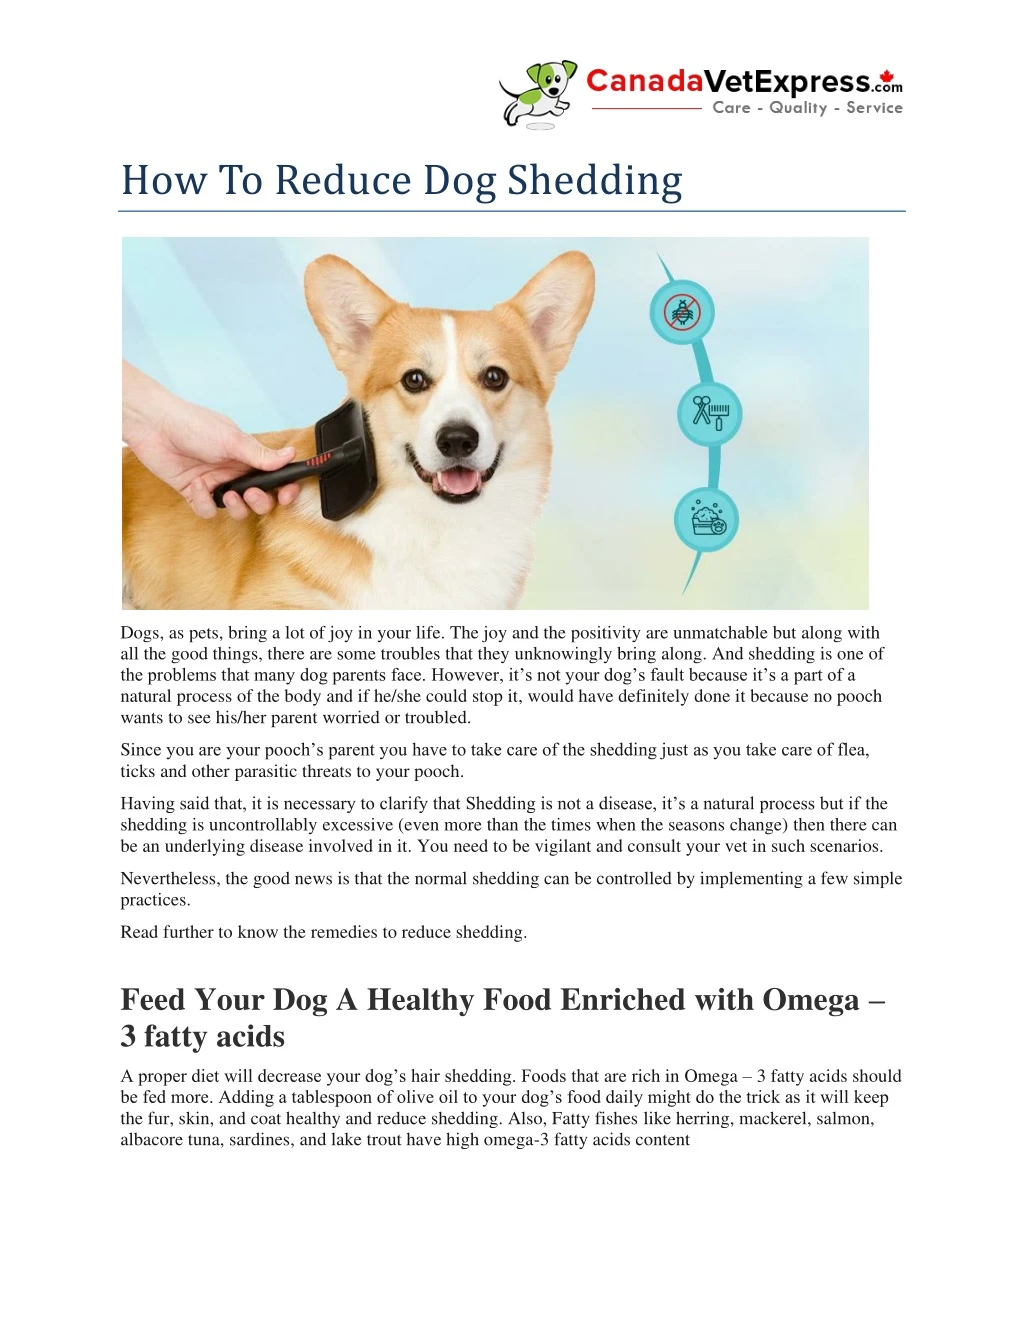 how to reduce dog shedding